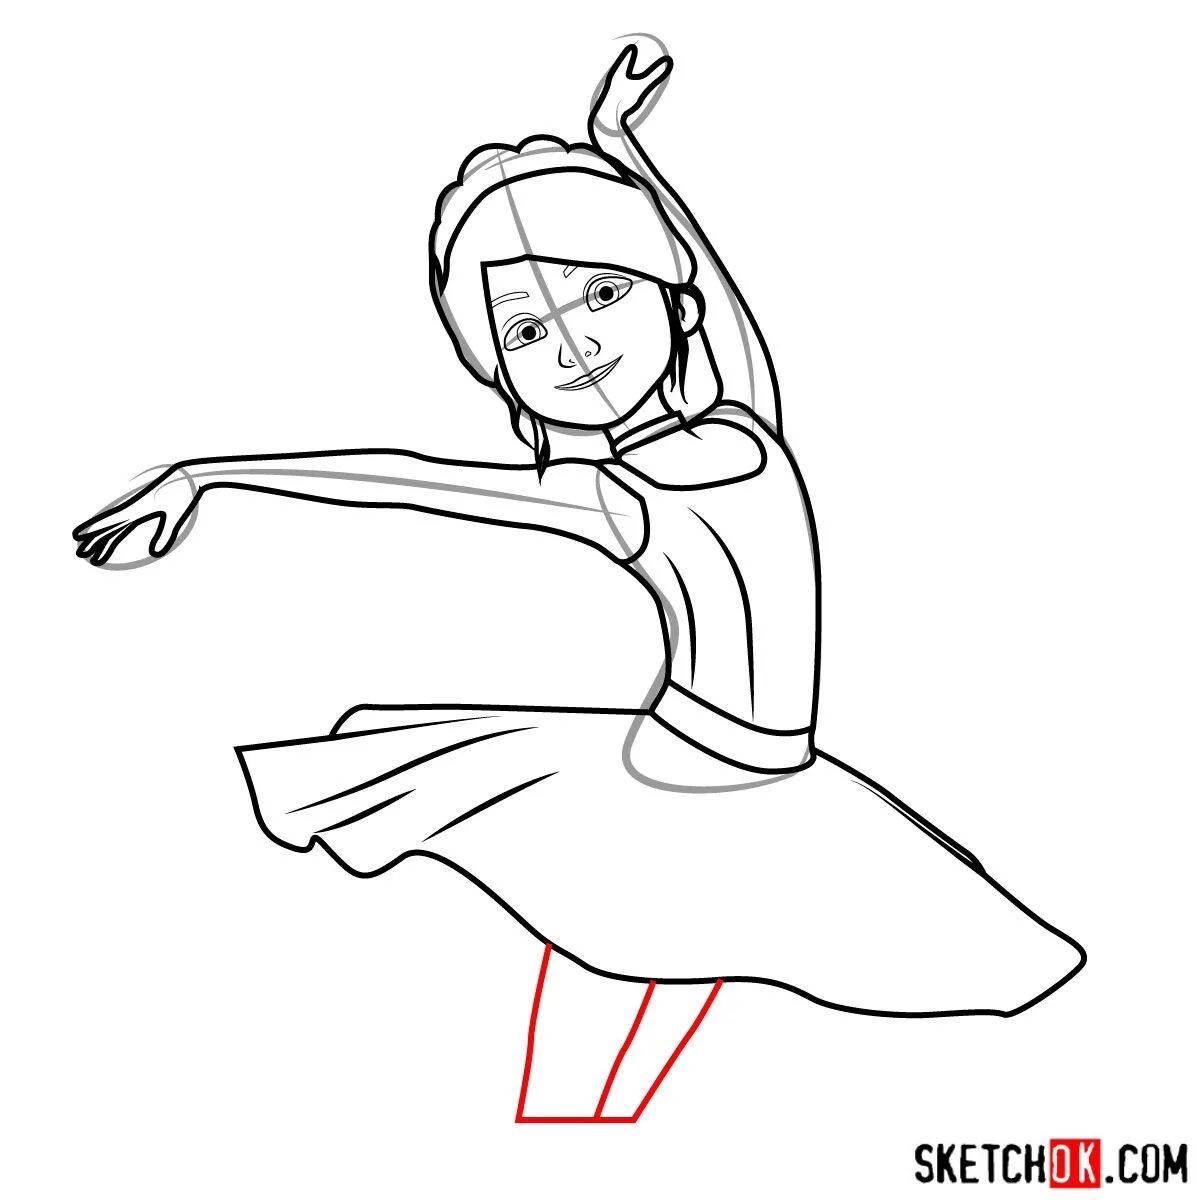 Ballerina cartoon #1